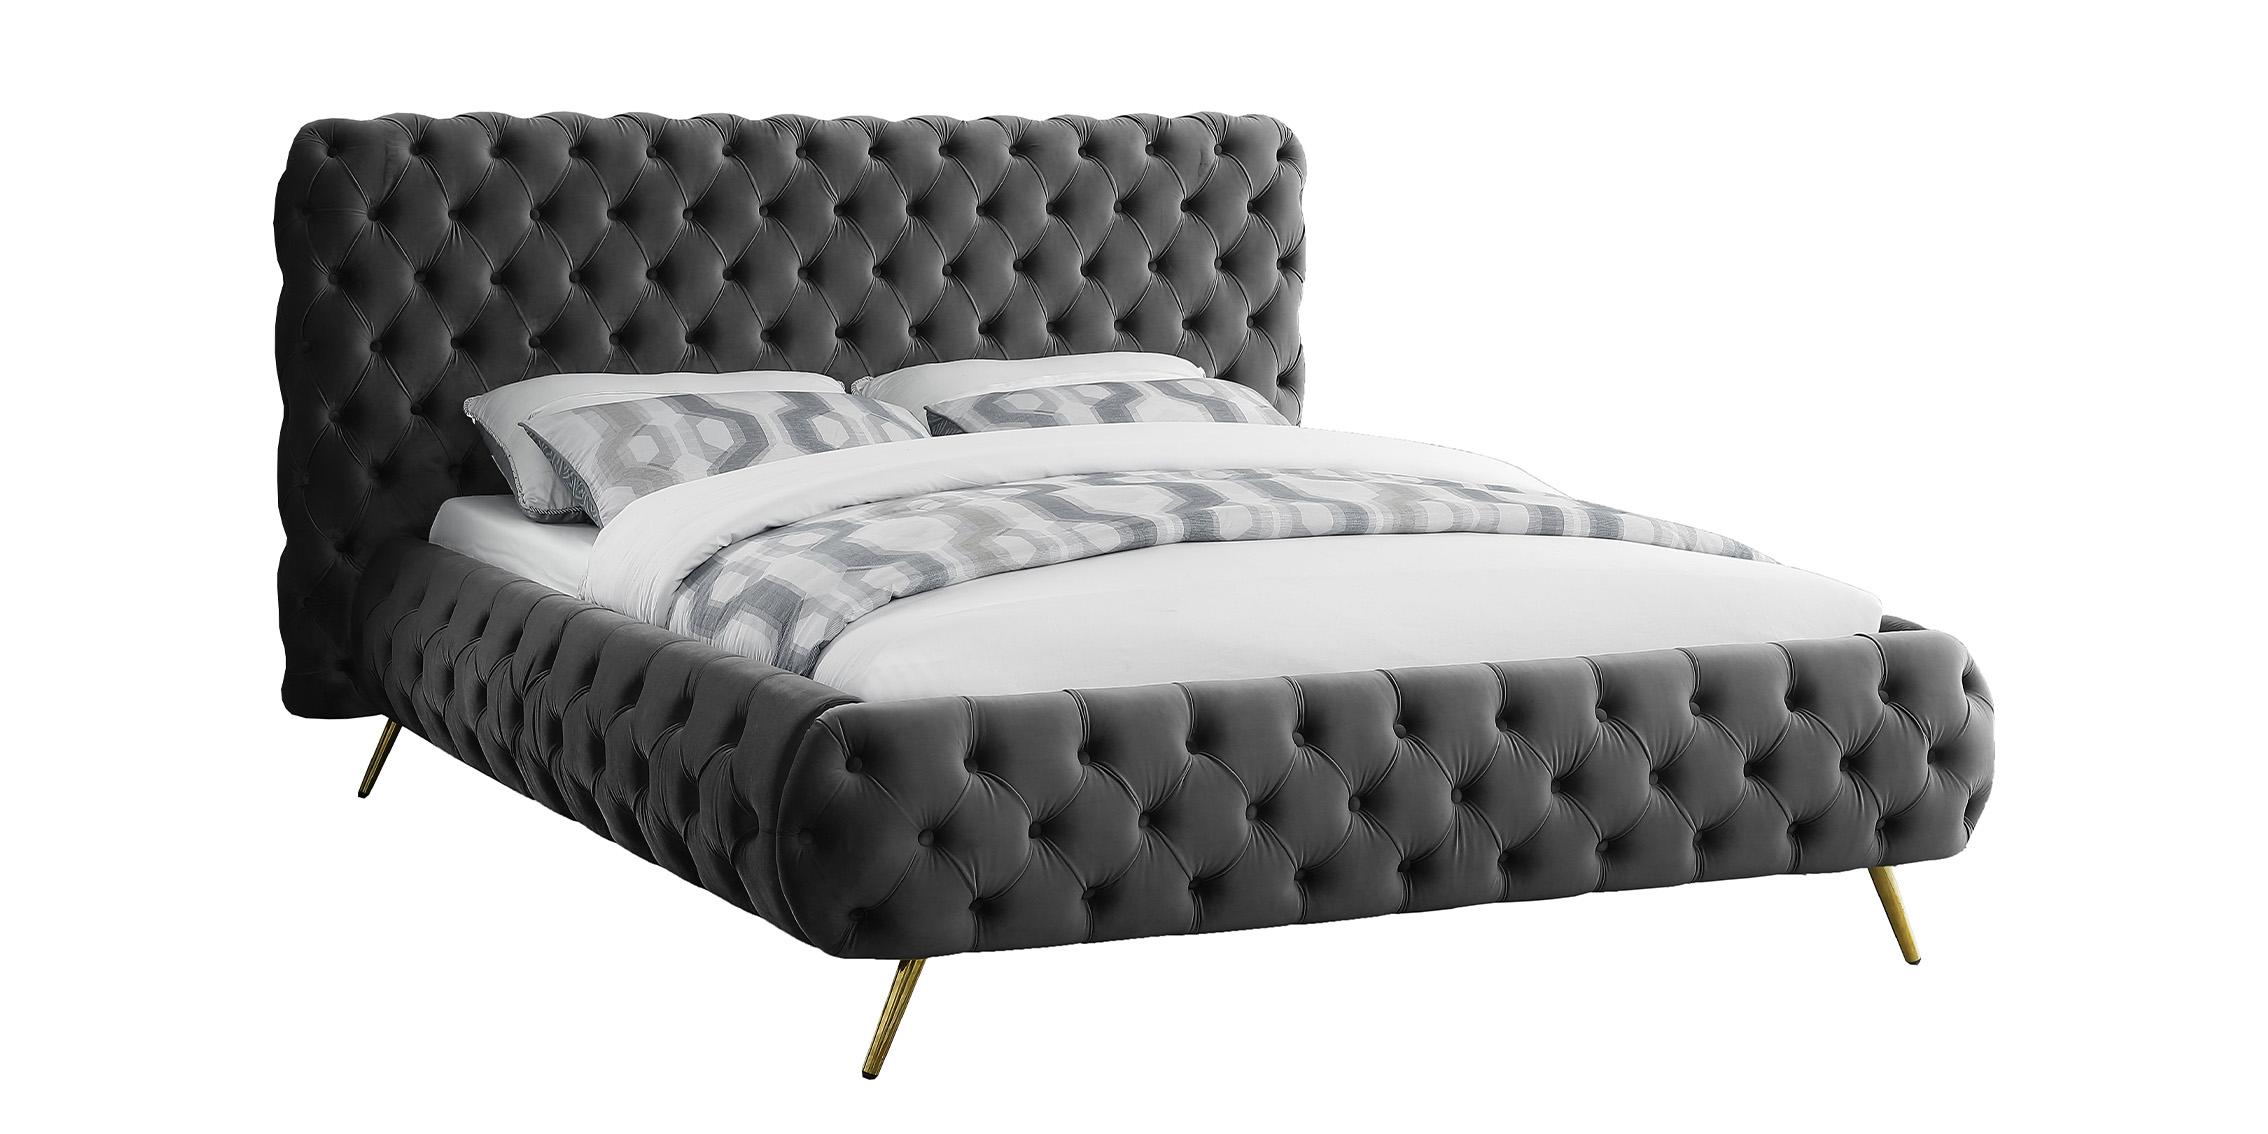 

    
Glam Grey Velvet Button Tufted King Bed DELANO DelanoGrey-K Meridian Modern
